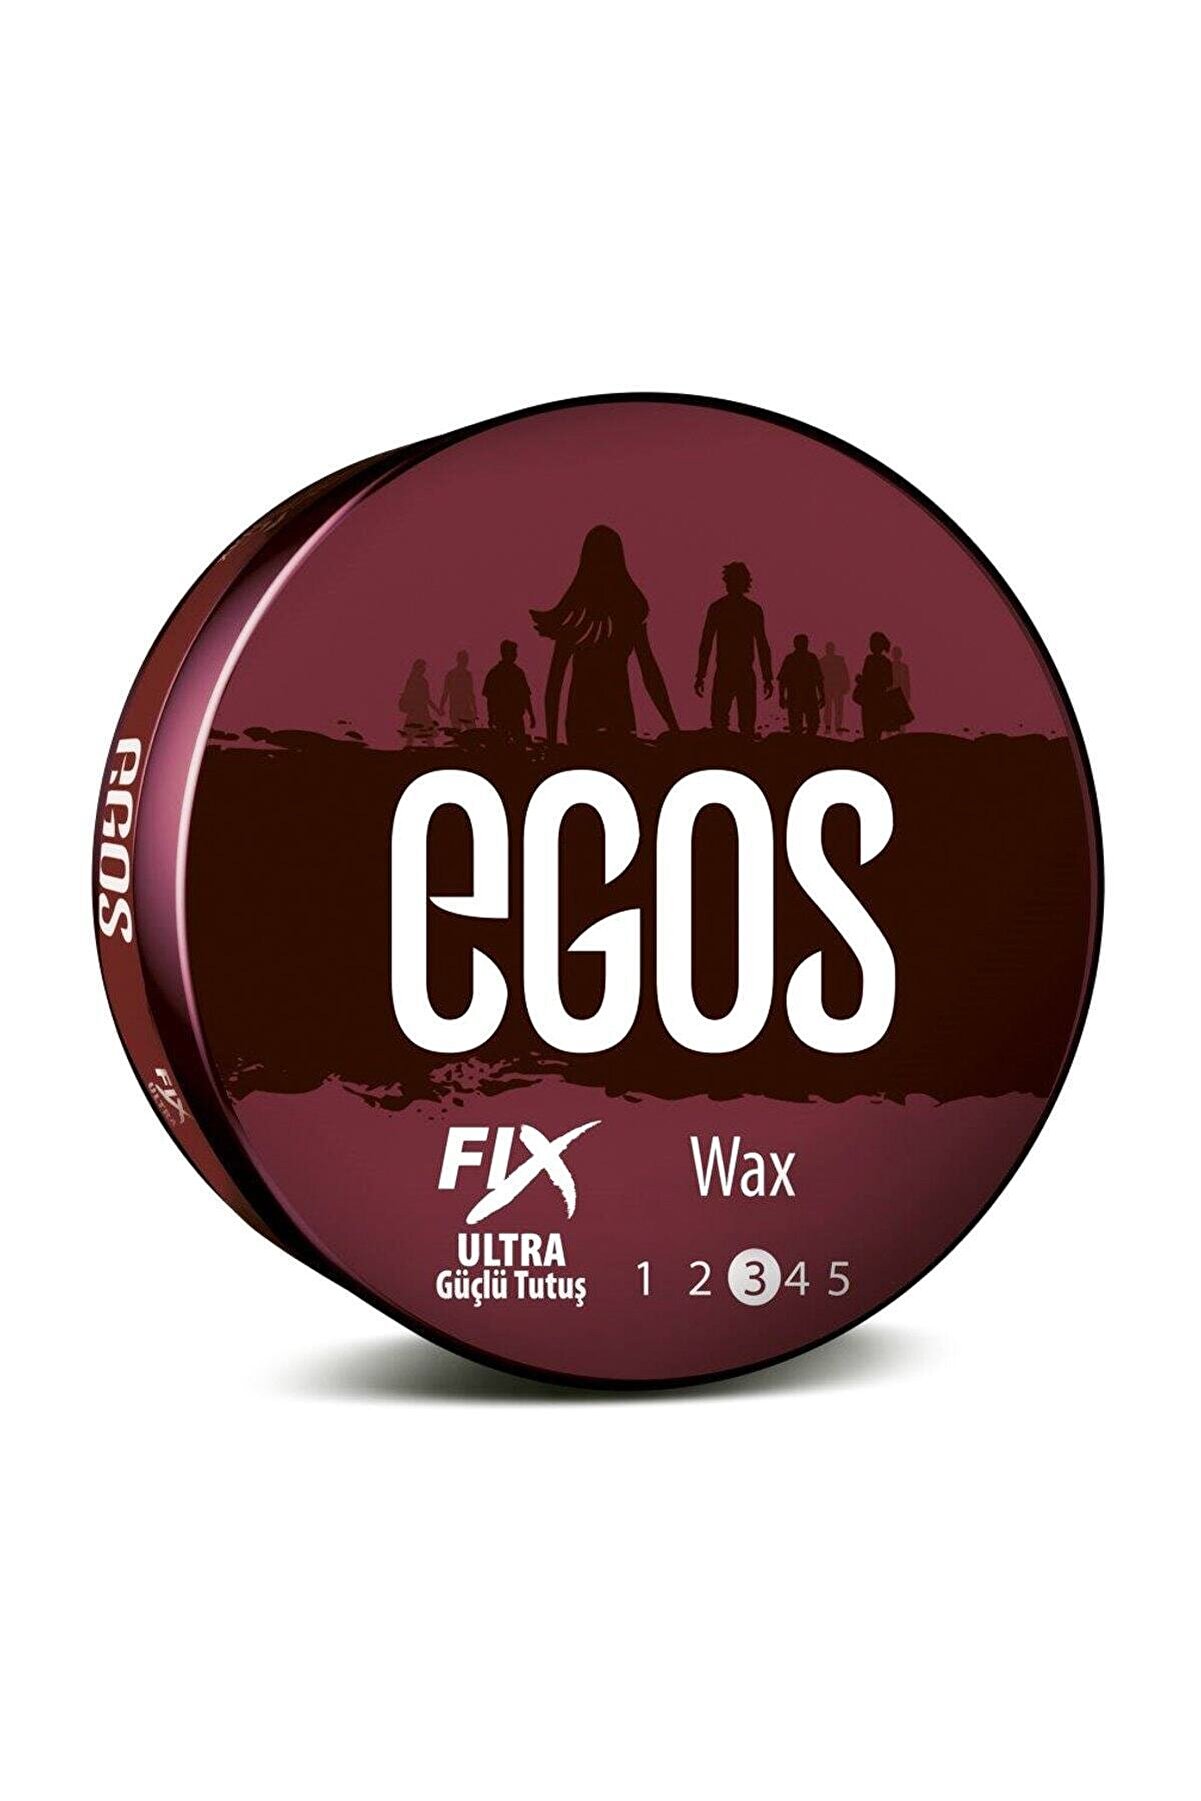 Egos Wax Fıx 100ml Ultra Güçlü Tutuş